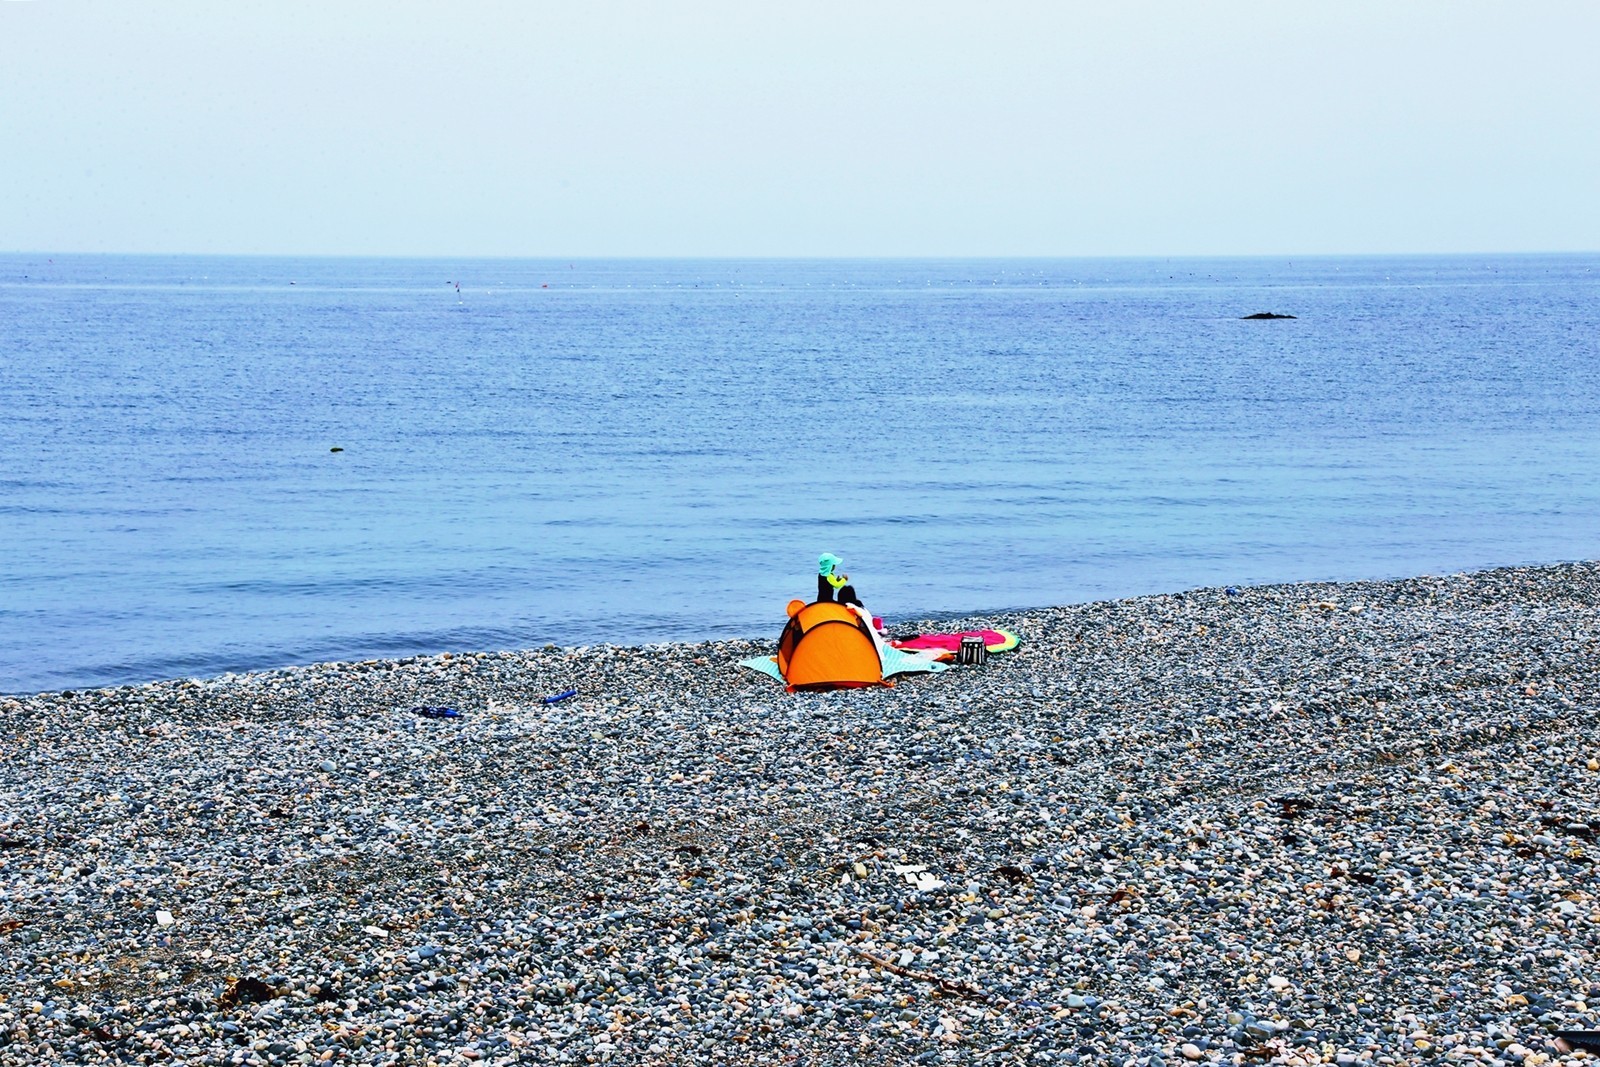 관성솔밭해변에서 텐트를 치고있는 모습.jpg